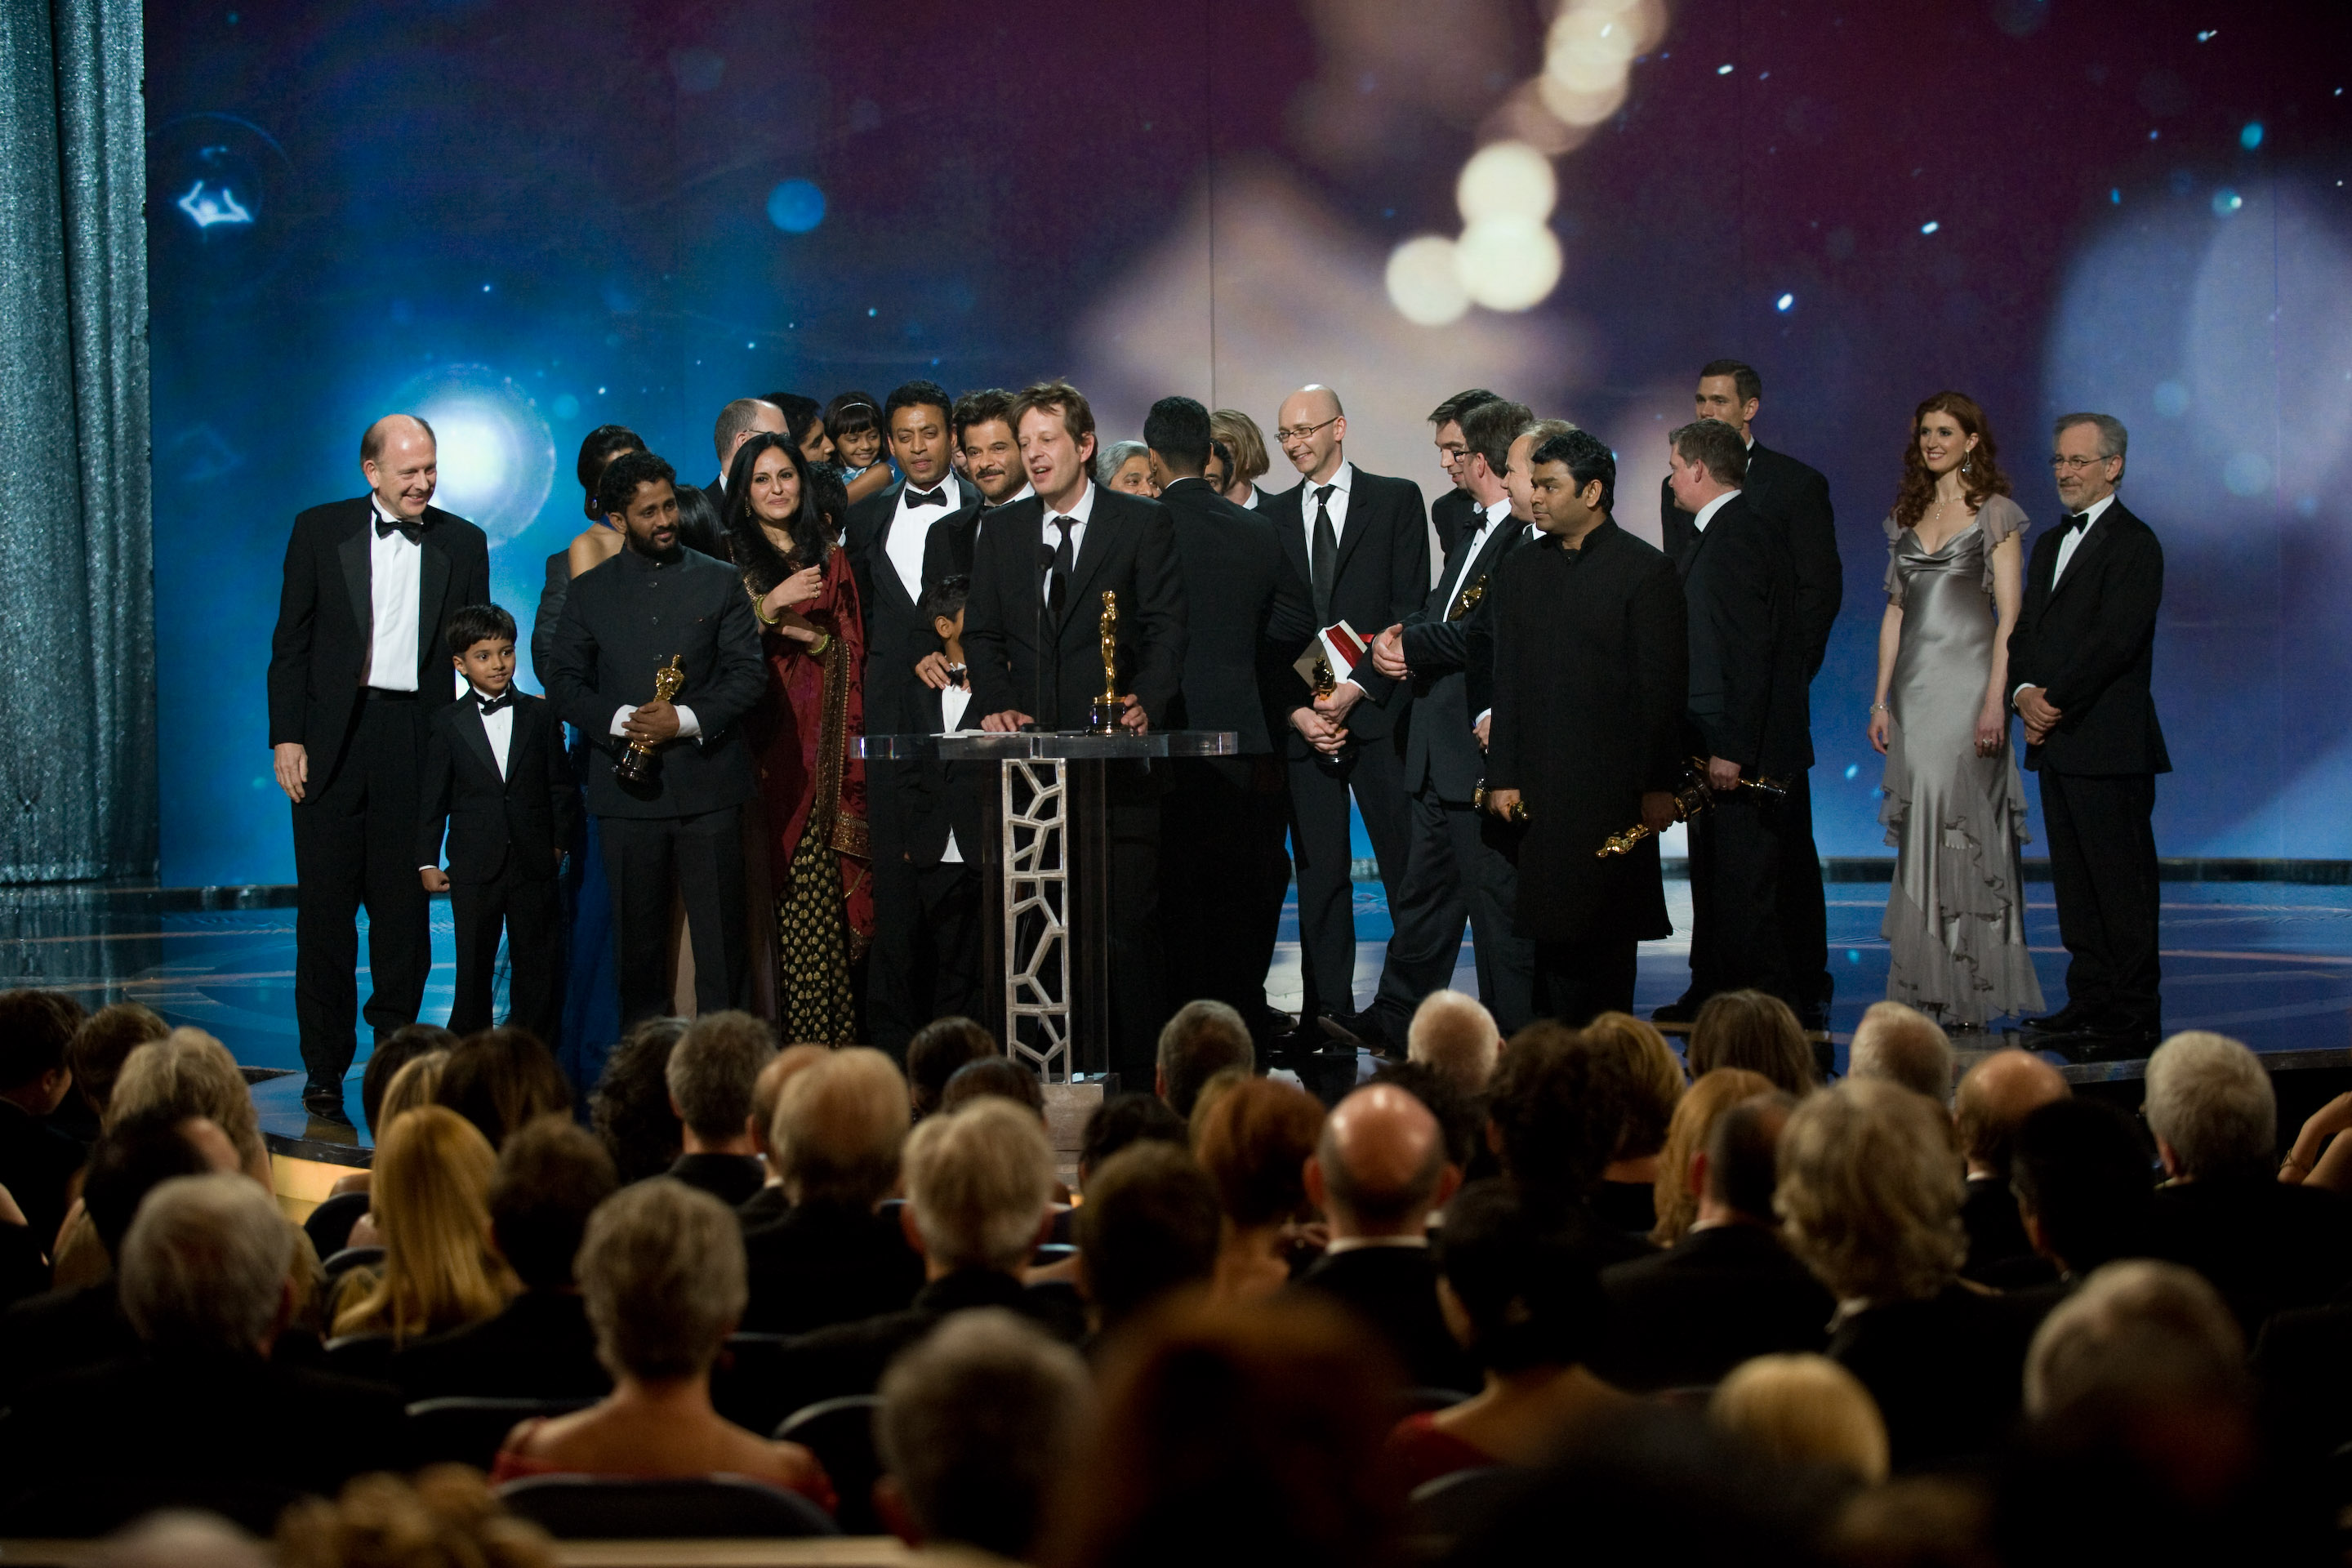 Видео церемонии награждения. Кадри - 81-я церемония вручения премии "Оскар". Награждение на сцене. Церемония награждения Оскар.